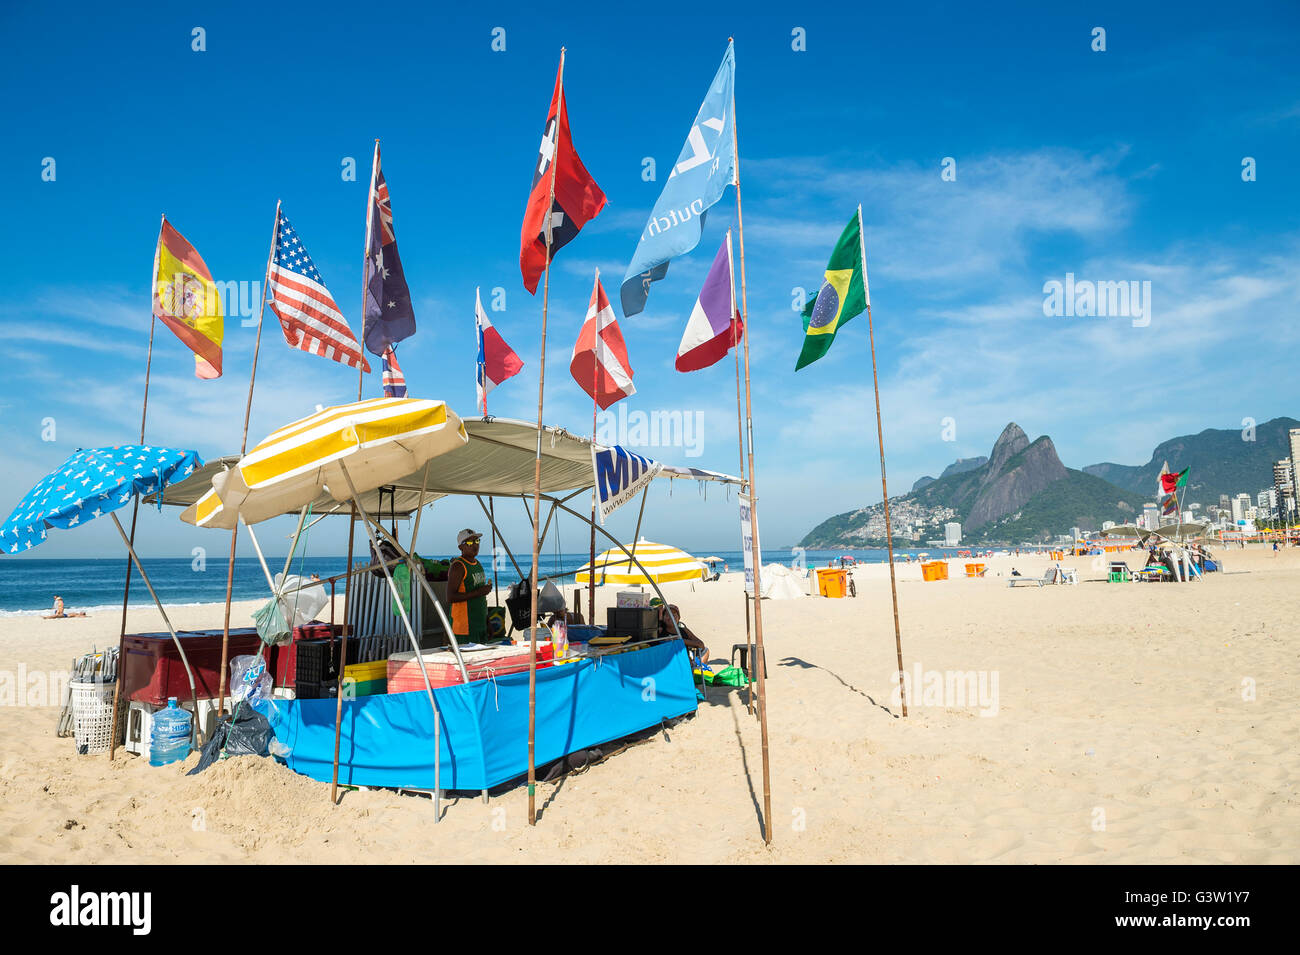 RIO DE JANEIRO - Aprile 4, 2016: bandiere internazionali di volare al di sopra di una barraca (brasiliano beach shack) sulla spiaggia di Ipanema. Foto Stock